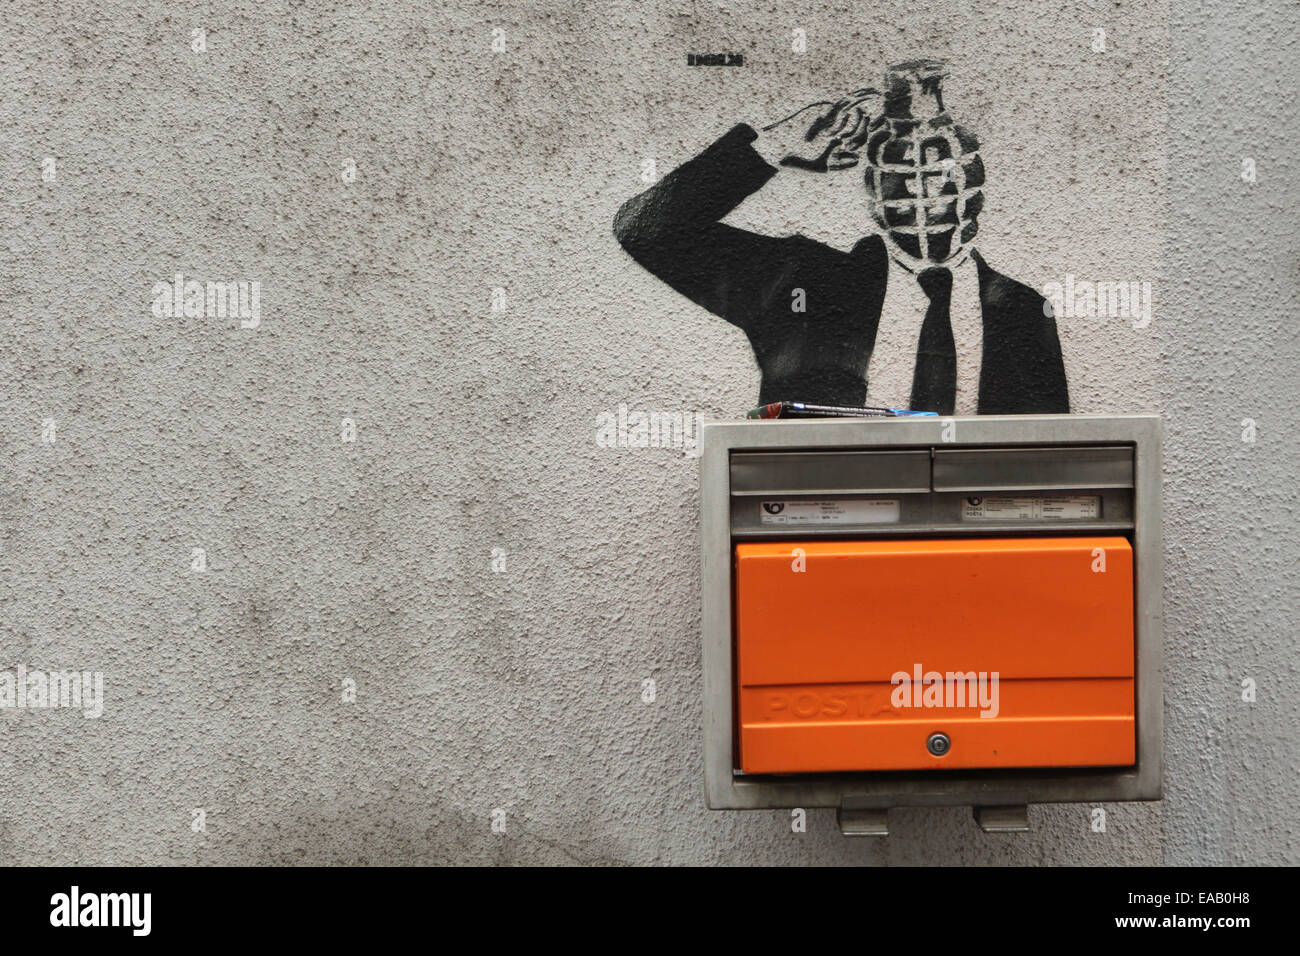 Granata con testa di soffiaggio di persona la sua testa rappresentata in una strada graffiti accanto a una cassetta delle lettere a Praga, Repubblica Ceca. Foto Stock